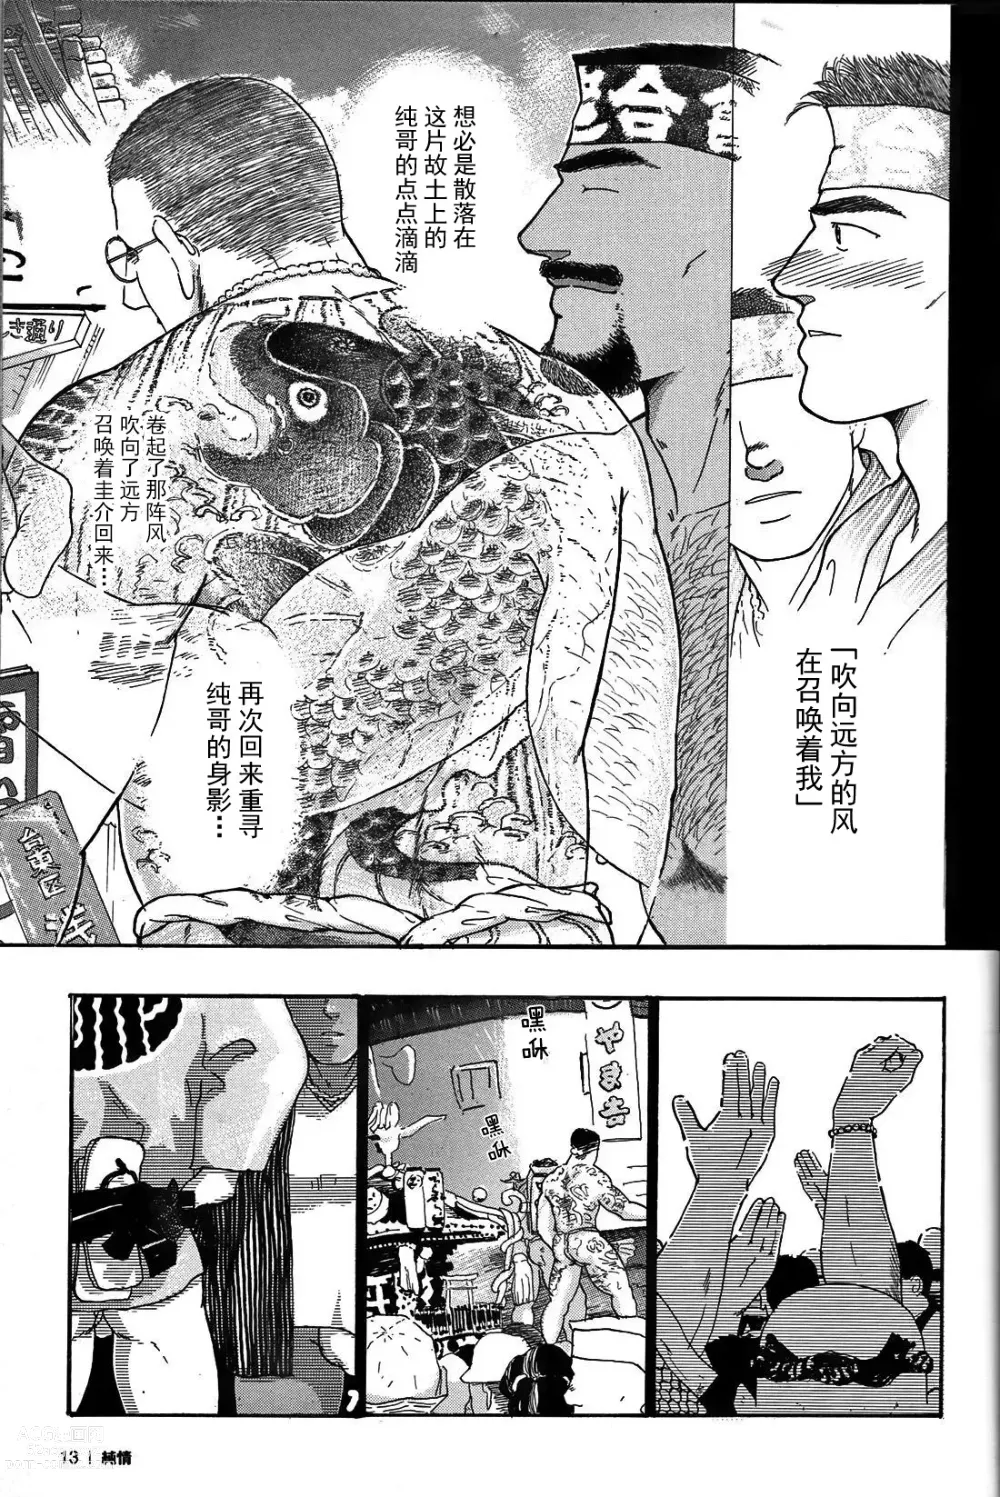 Page 12 of manga 纯情!! 第一章 「纯情」